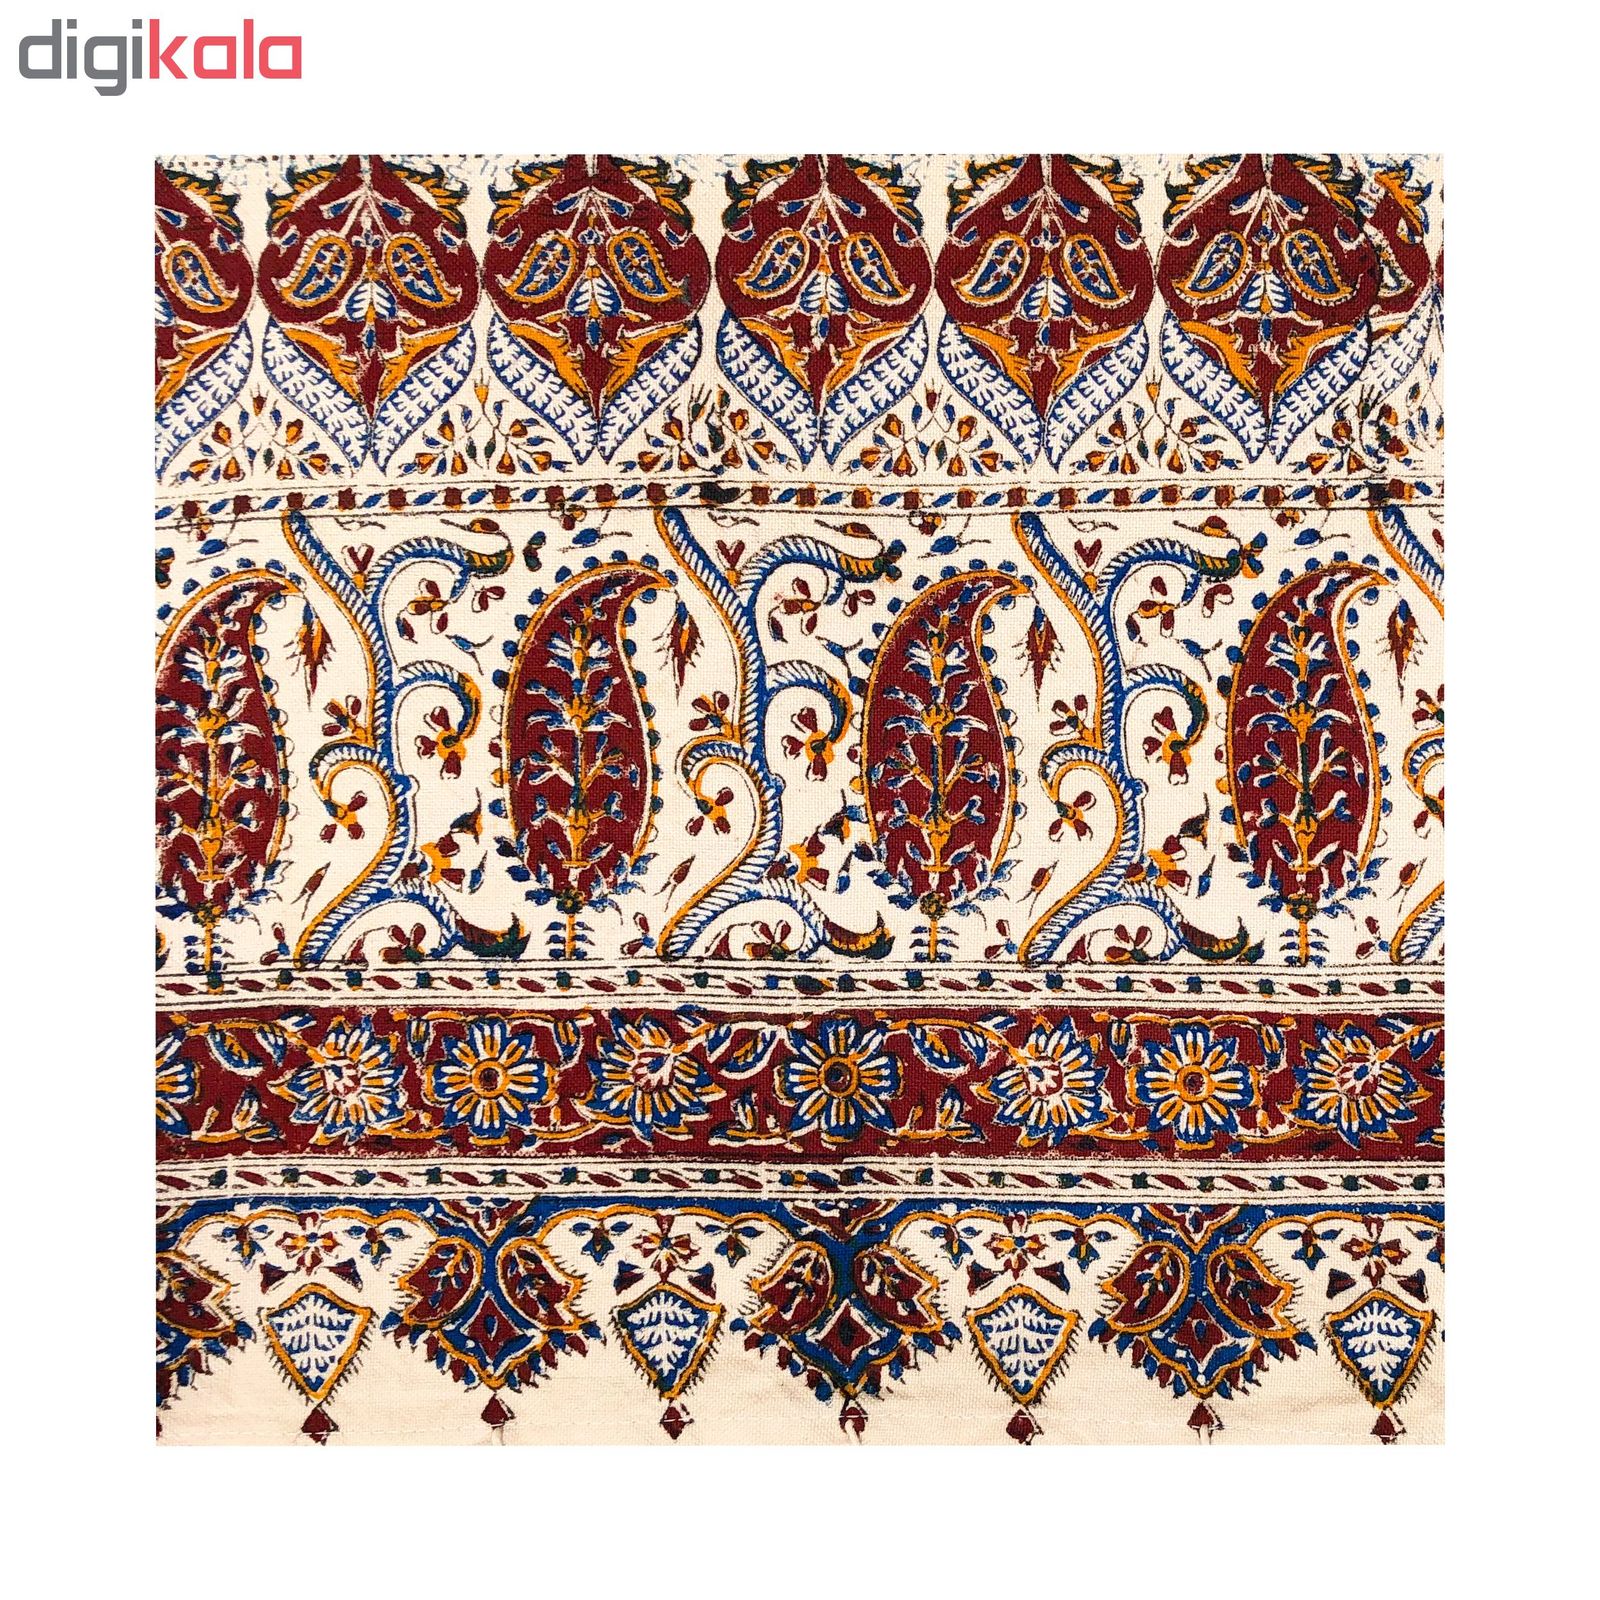 رومیزی قلمکار ممتاز اصفهان اثر عطريان طرح تخت جمشيد مدل G67سایز 0*280 سانتی متر